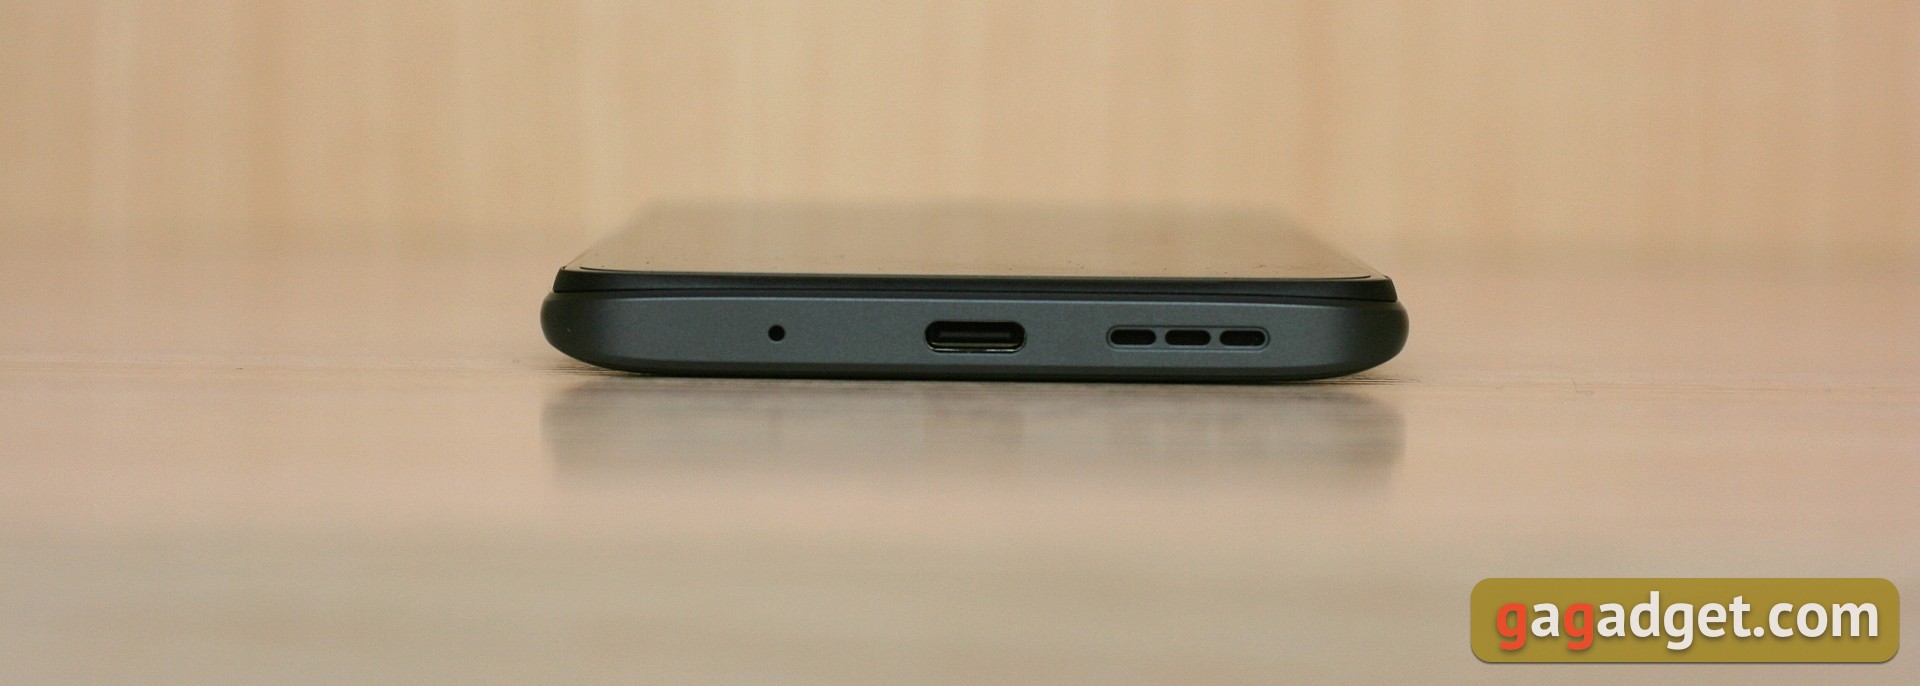 Recenzja Xiaomi Redmi 10: legendarny producent budżetowy, teraz z 50-megapikselowym aparatem-6